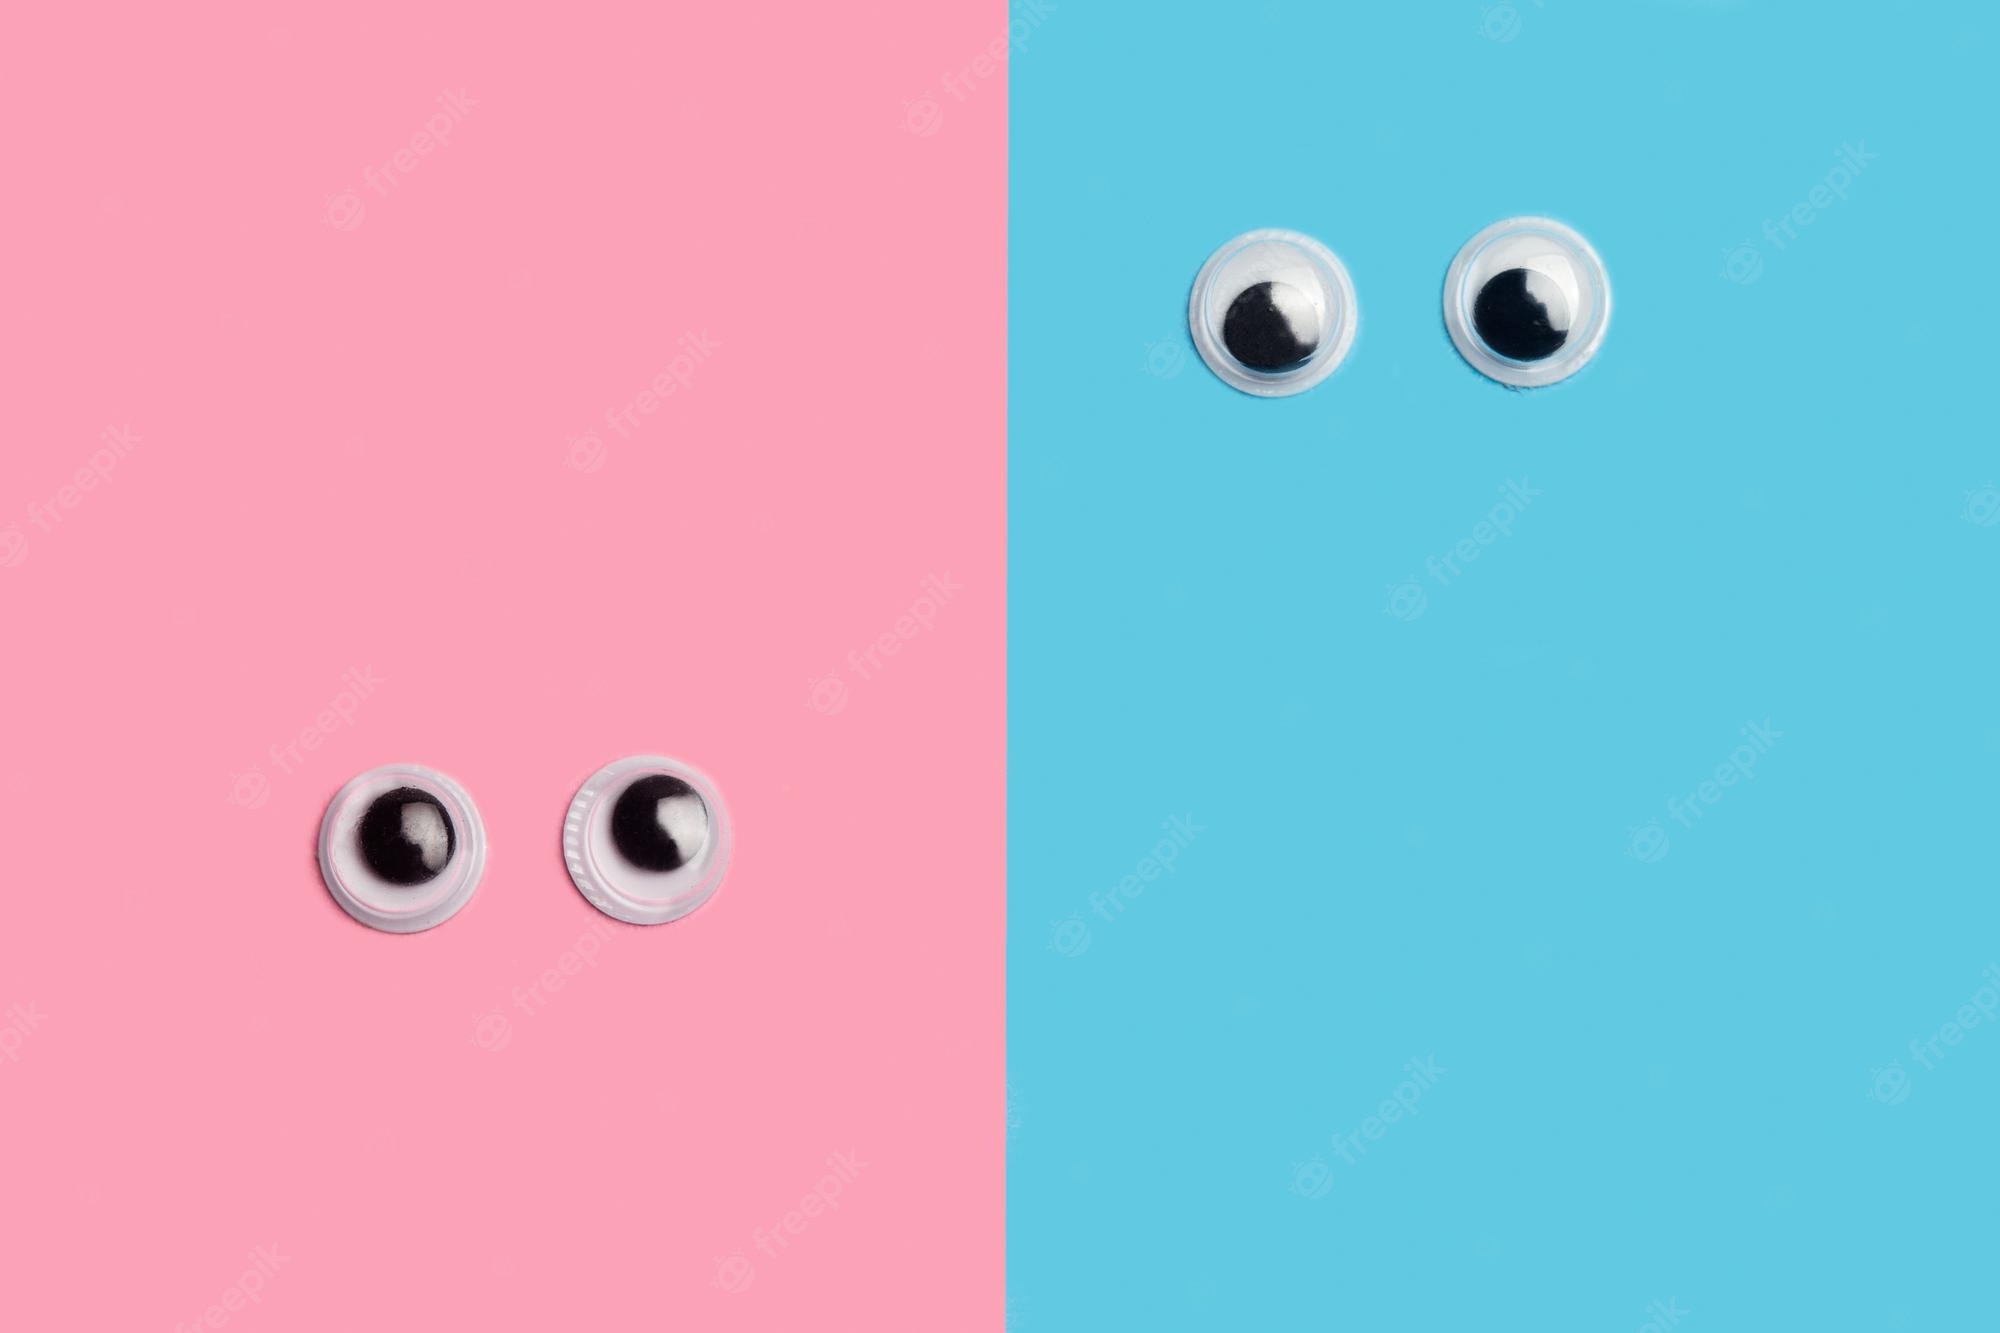 Googly Eyes Image. Free Vectors, & PSD